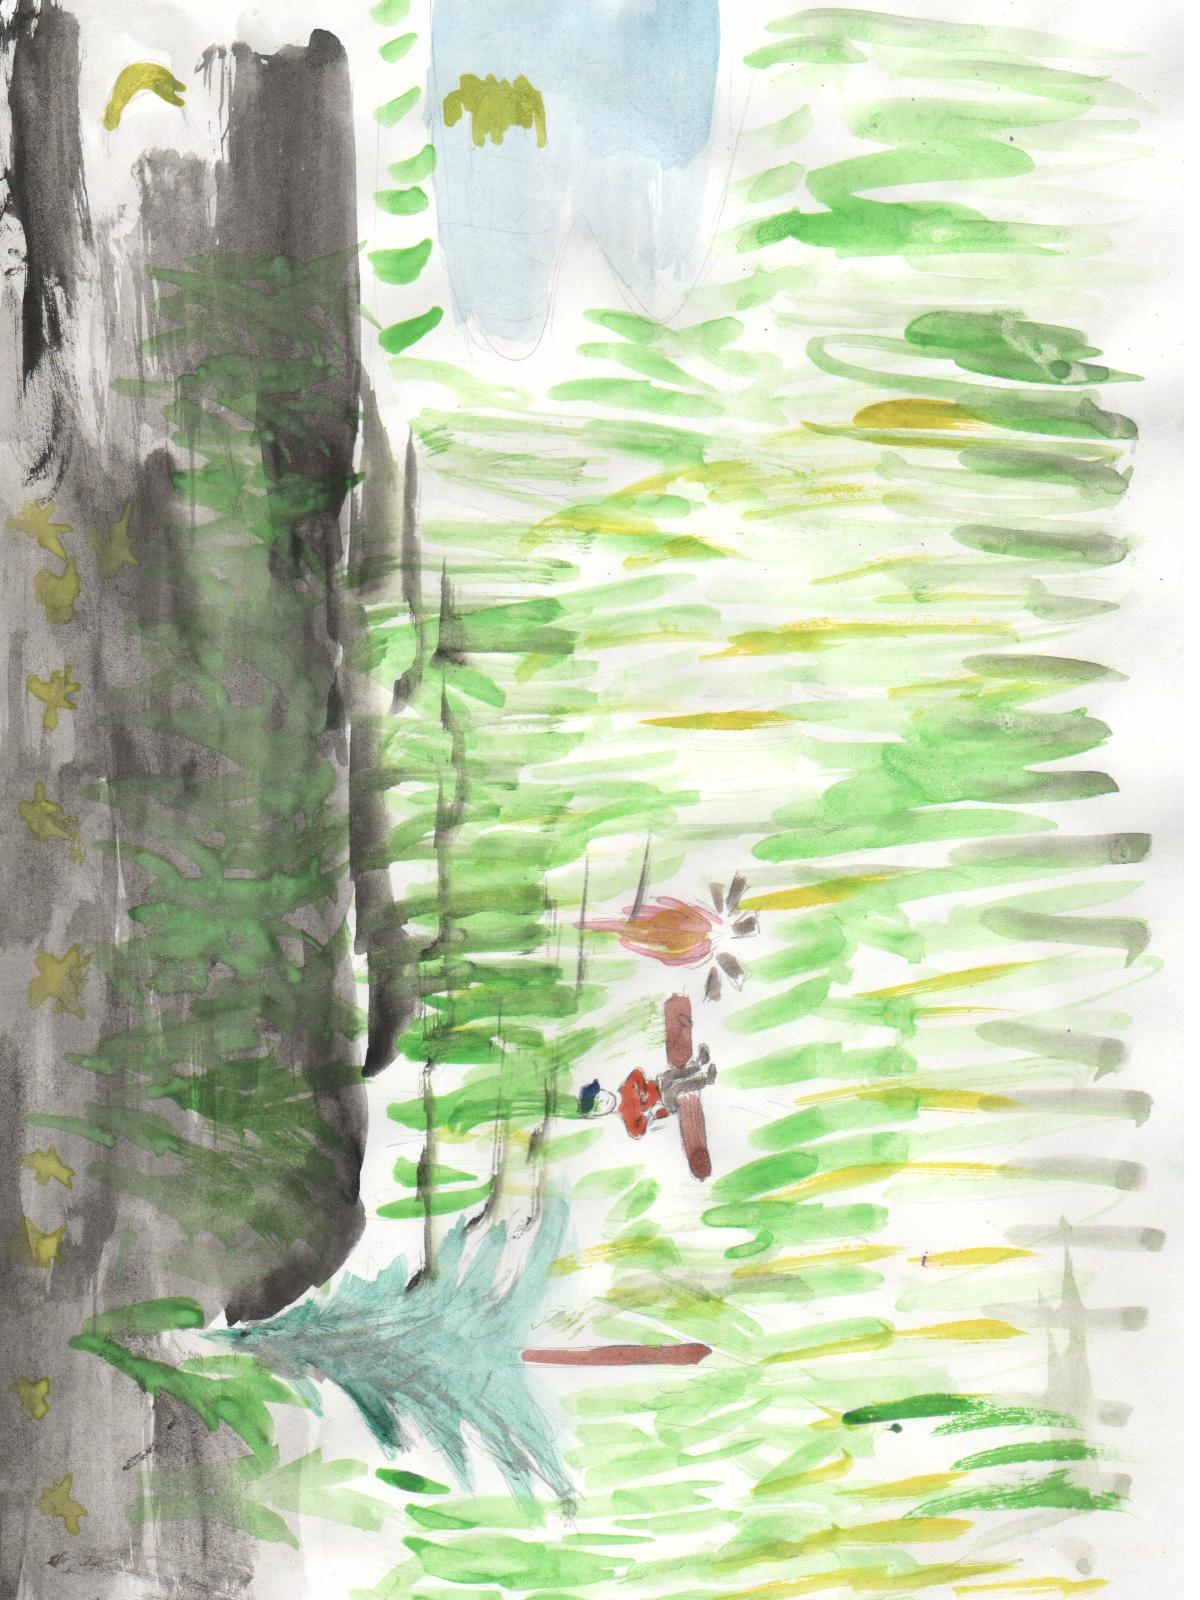 Рисунок к эпизоду васюткино озеро. Иллюстрация Васюткино озеро 5 класс. Васюткино озеро 5 класс. Иллюстрация к сказке Васюткино озеро. Астафьев Васюткино озеро иллюстрации.